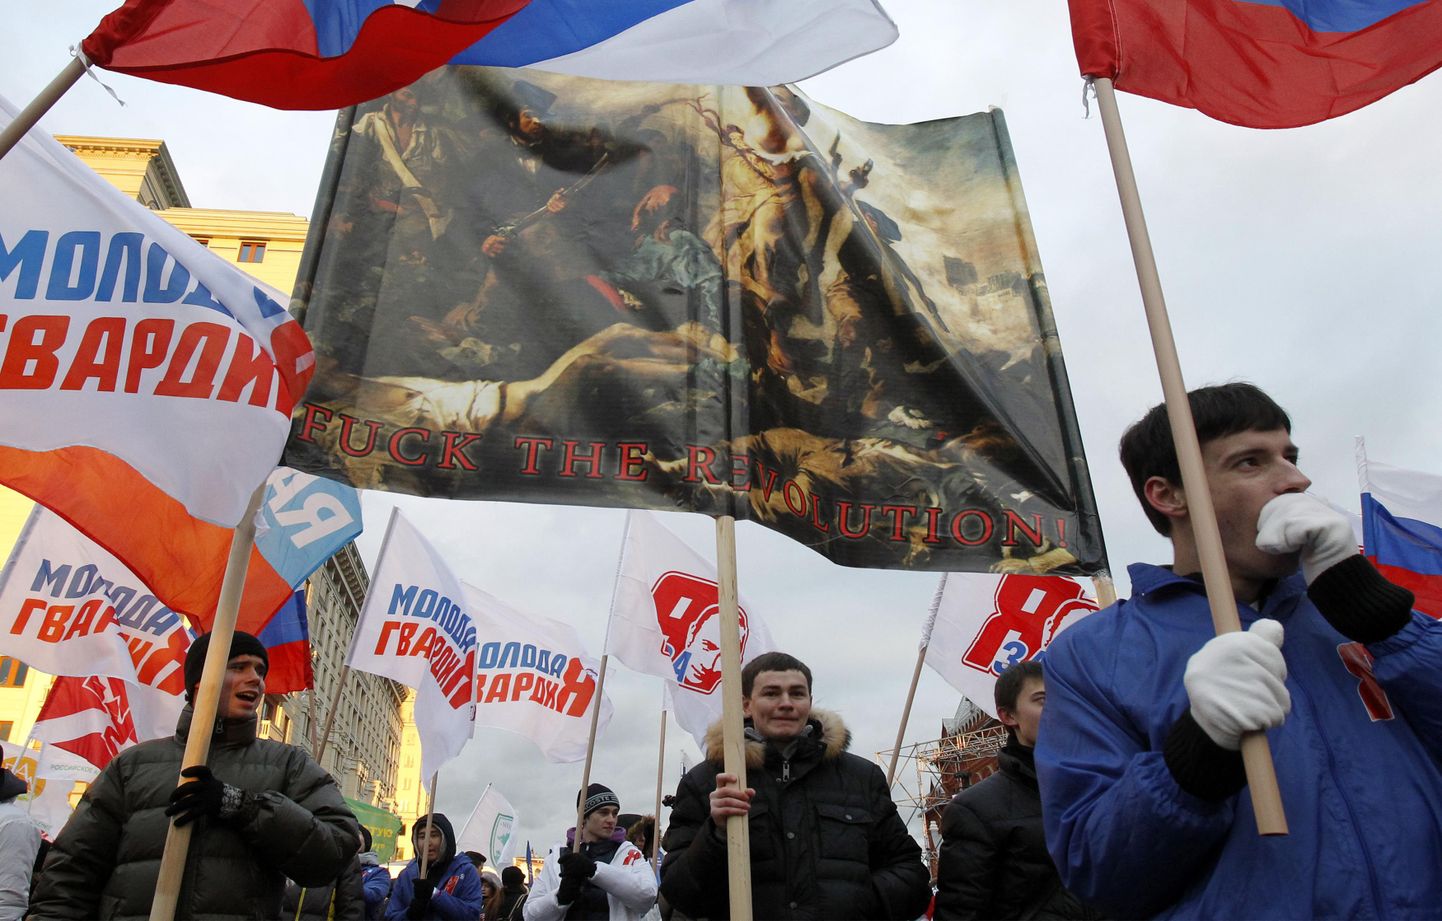 Lippe ja plakateid hoidvad Kremli-meelsed aktivistid eile Moskva kesklinnas Ühtsele Venemaale toetust avaldamas. Kesksel kohal repro Eugène Delacroix’ maalist «Vabadus viib rahva barrikaadidele», mida on täiendatud kirjaga «Kuradile see revolutsioon!».